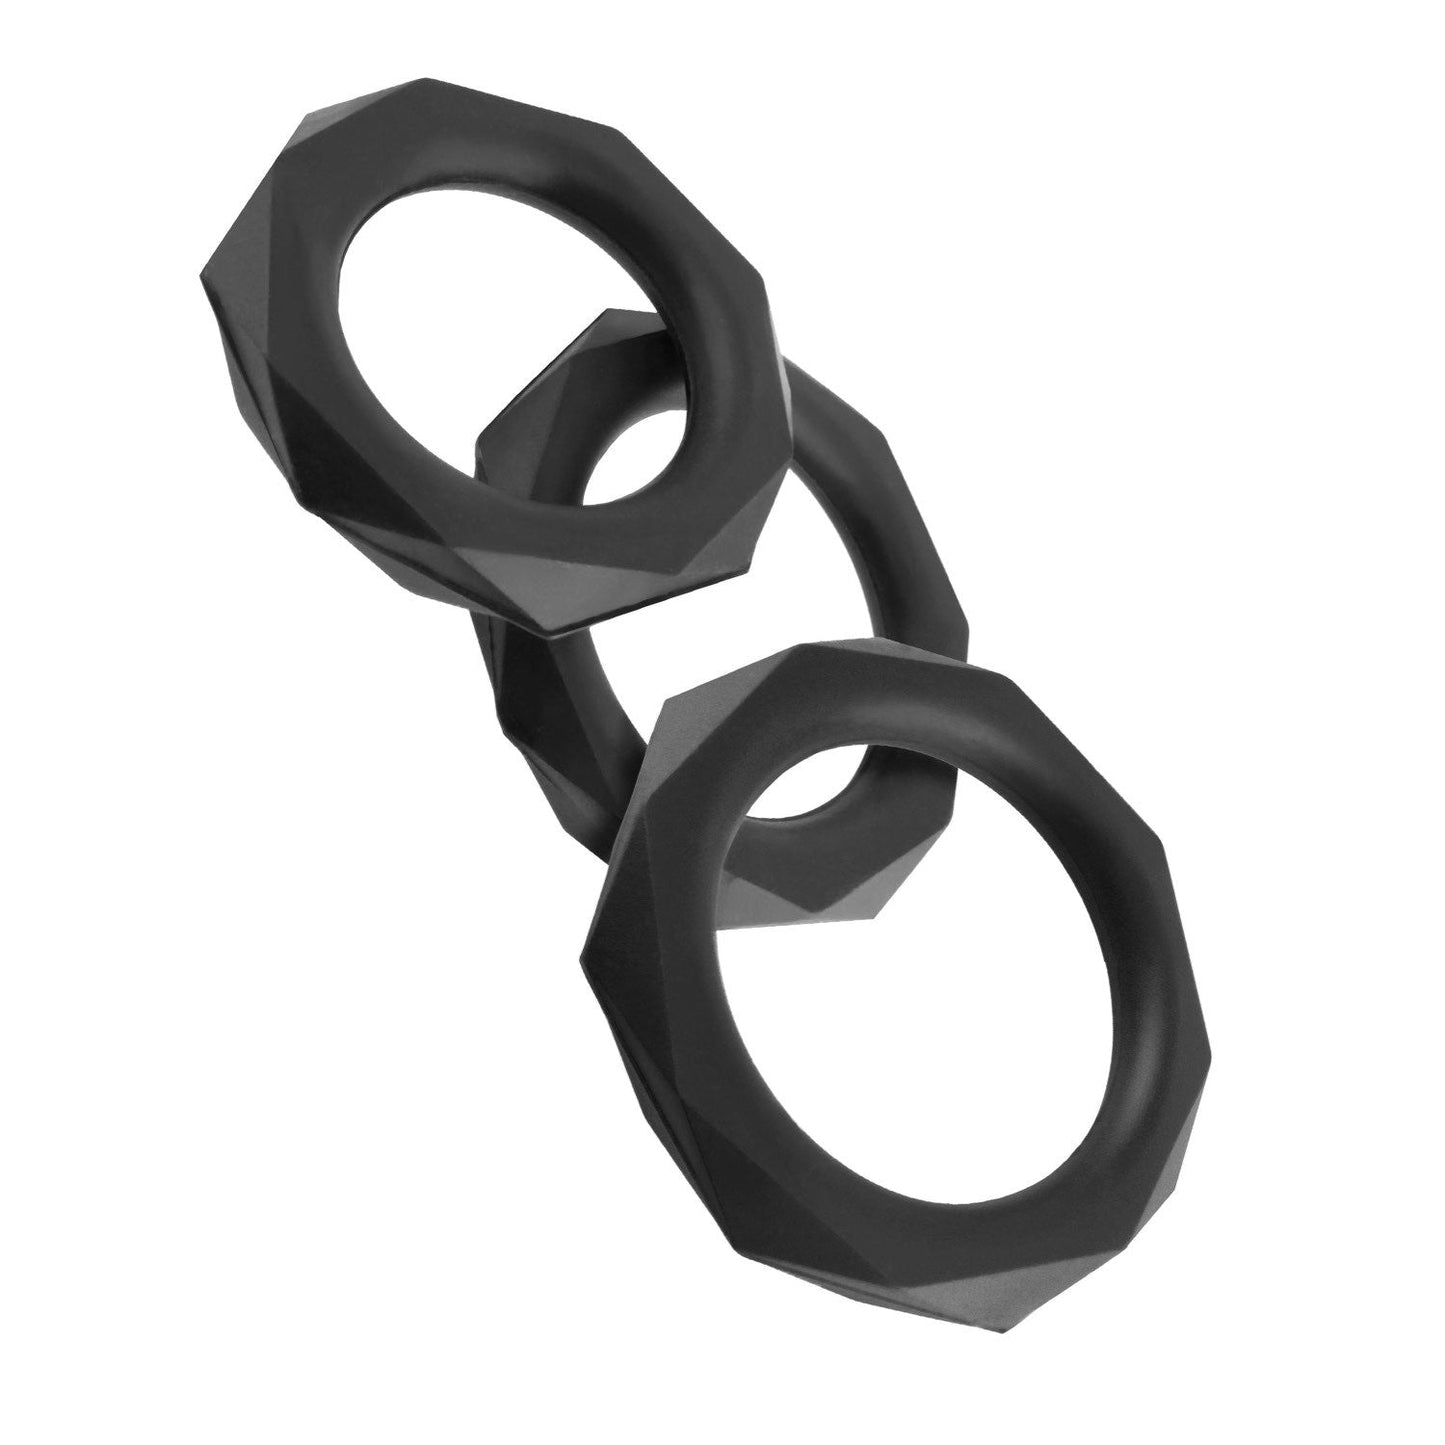 Silicone Designer Stamina Set - Black Cock Rings - Set of 3 Sizes